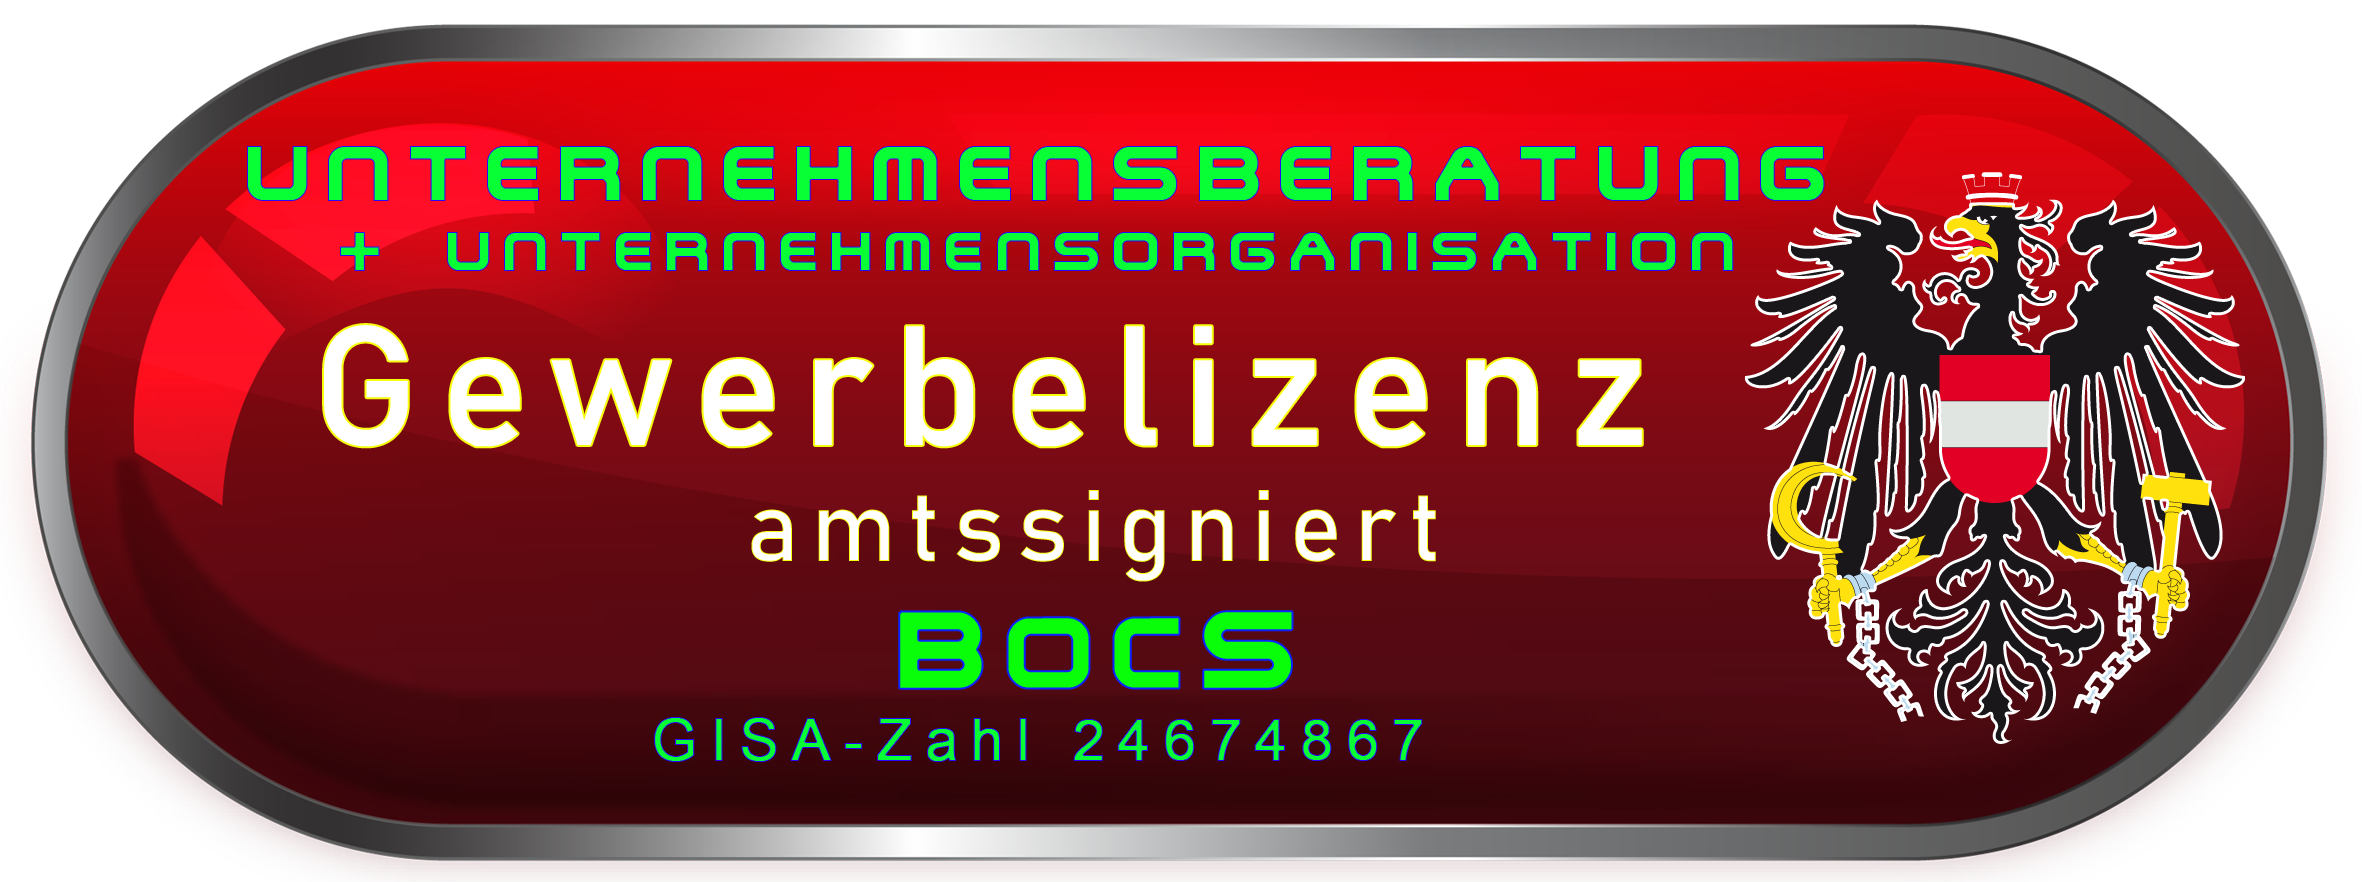 bocs-gewerbelizenz-unternehmensberatung-unternehmensorganisation-2.png